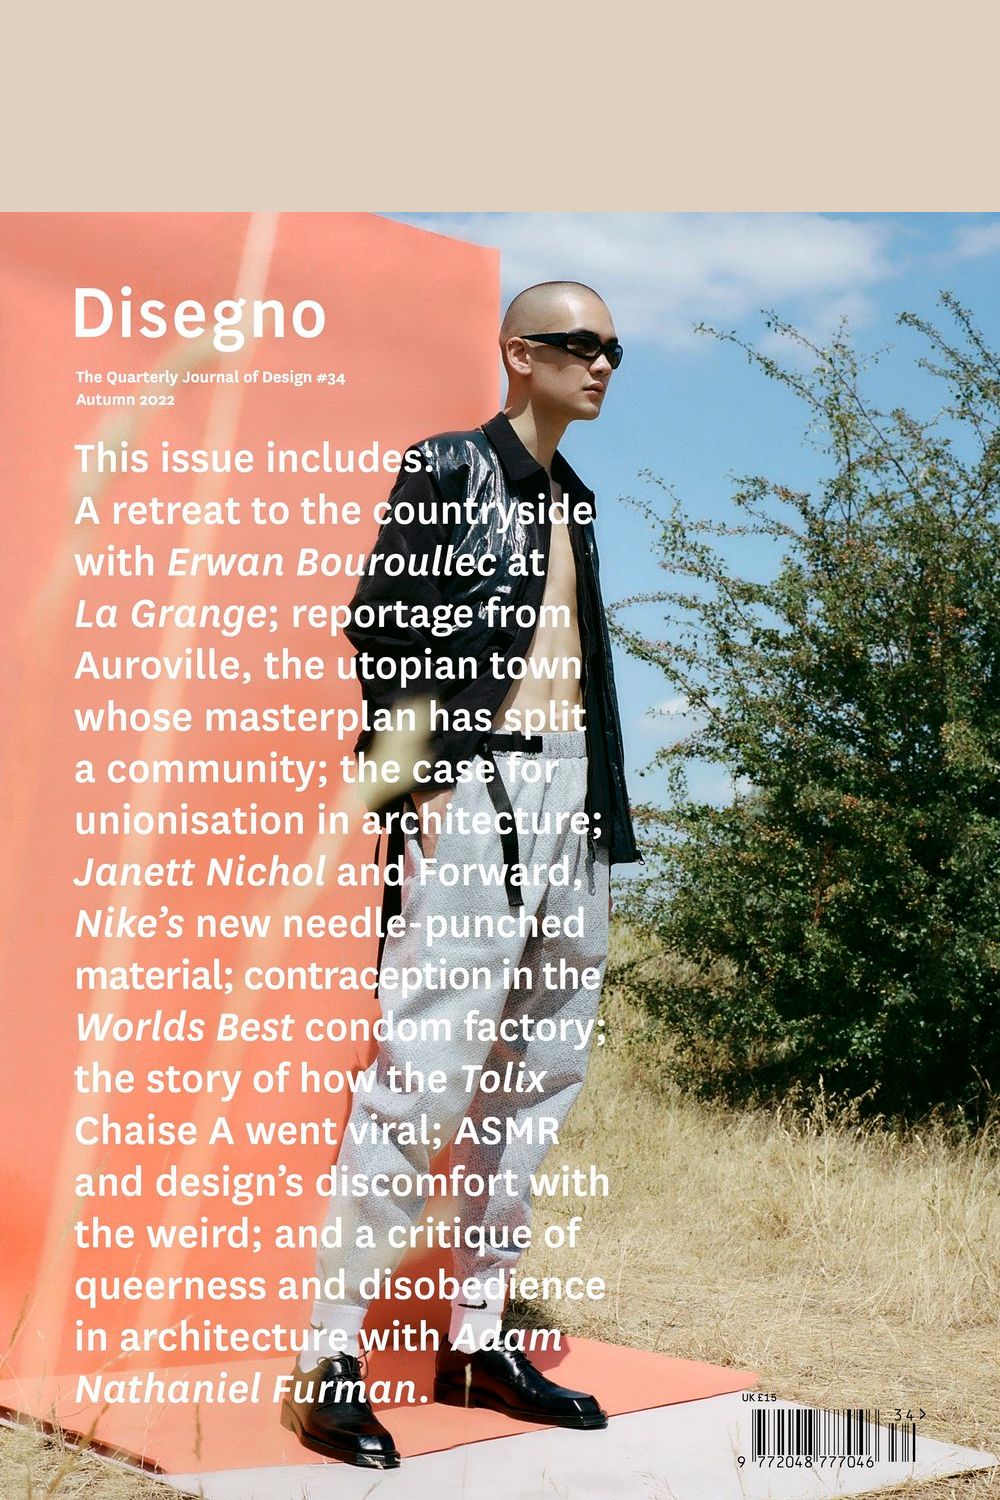 Disegno Design Journal #34